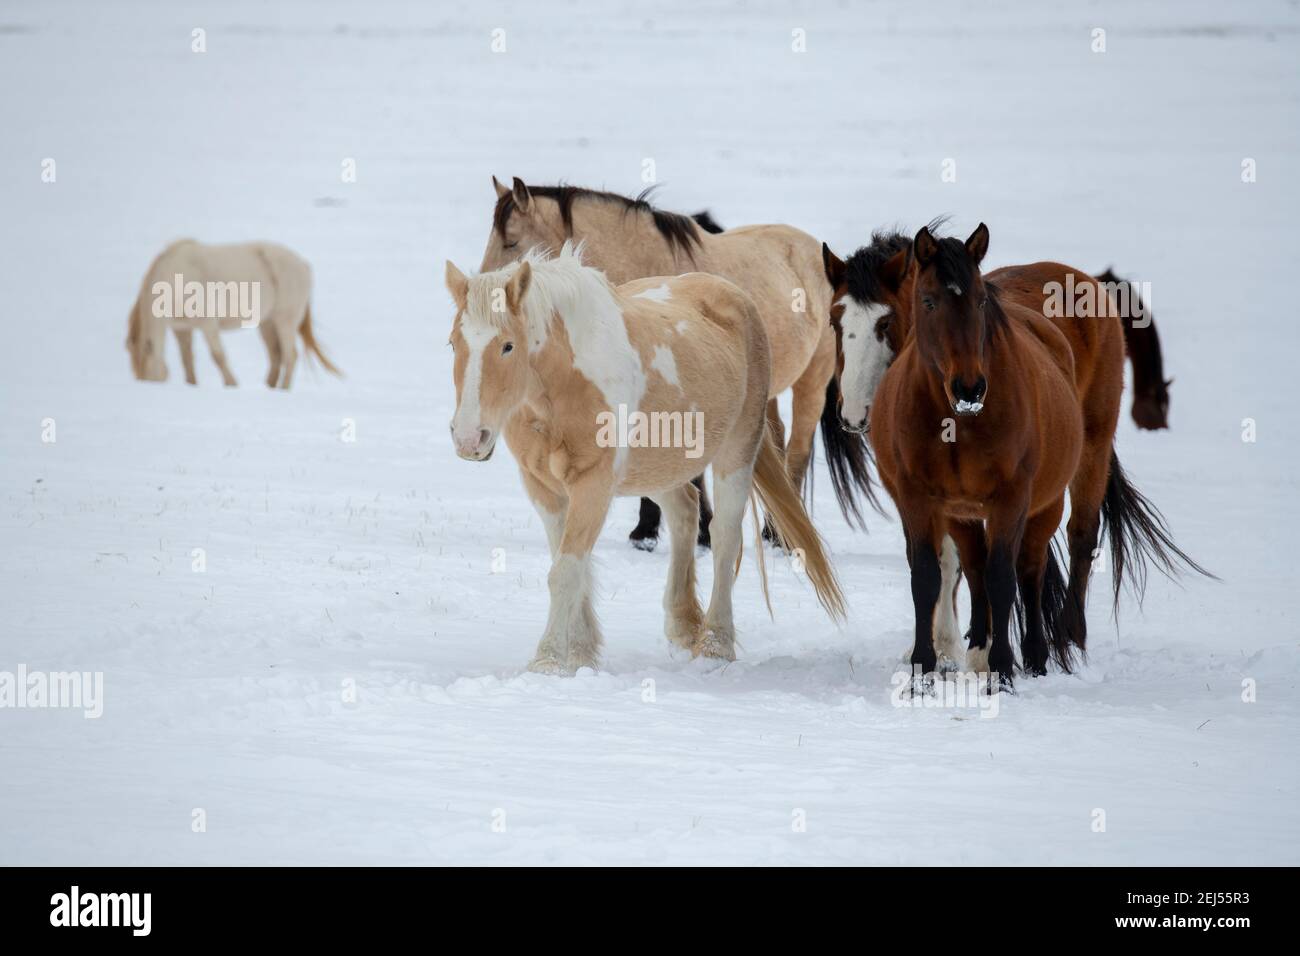 USA, Montana, Gardiner. Palamino Farbe, Bay und Buckskin Pferde mit zottigen Wintermäntel im Schnee. Stockfoto